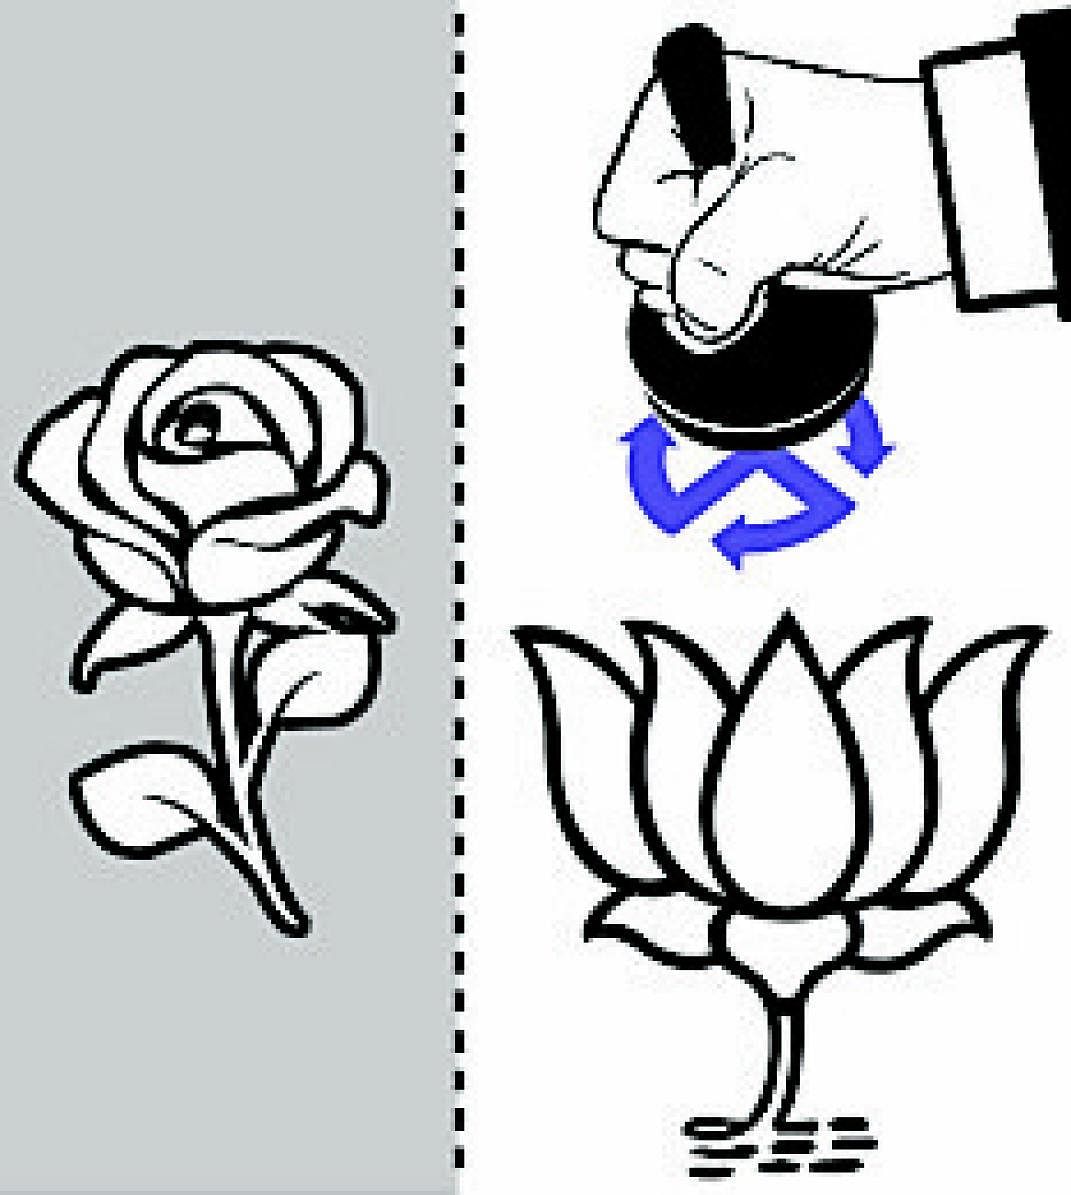 Poll-O-Meter:  Lotus in, rose out